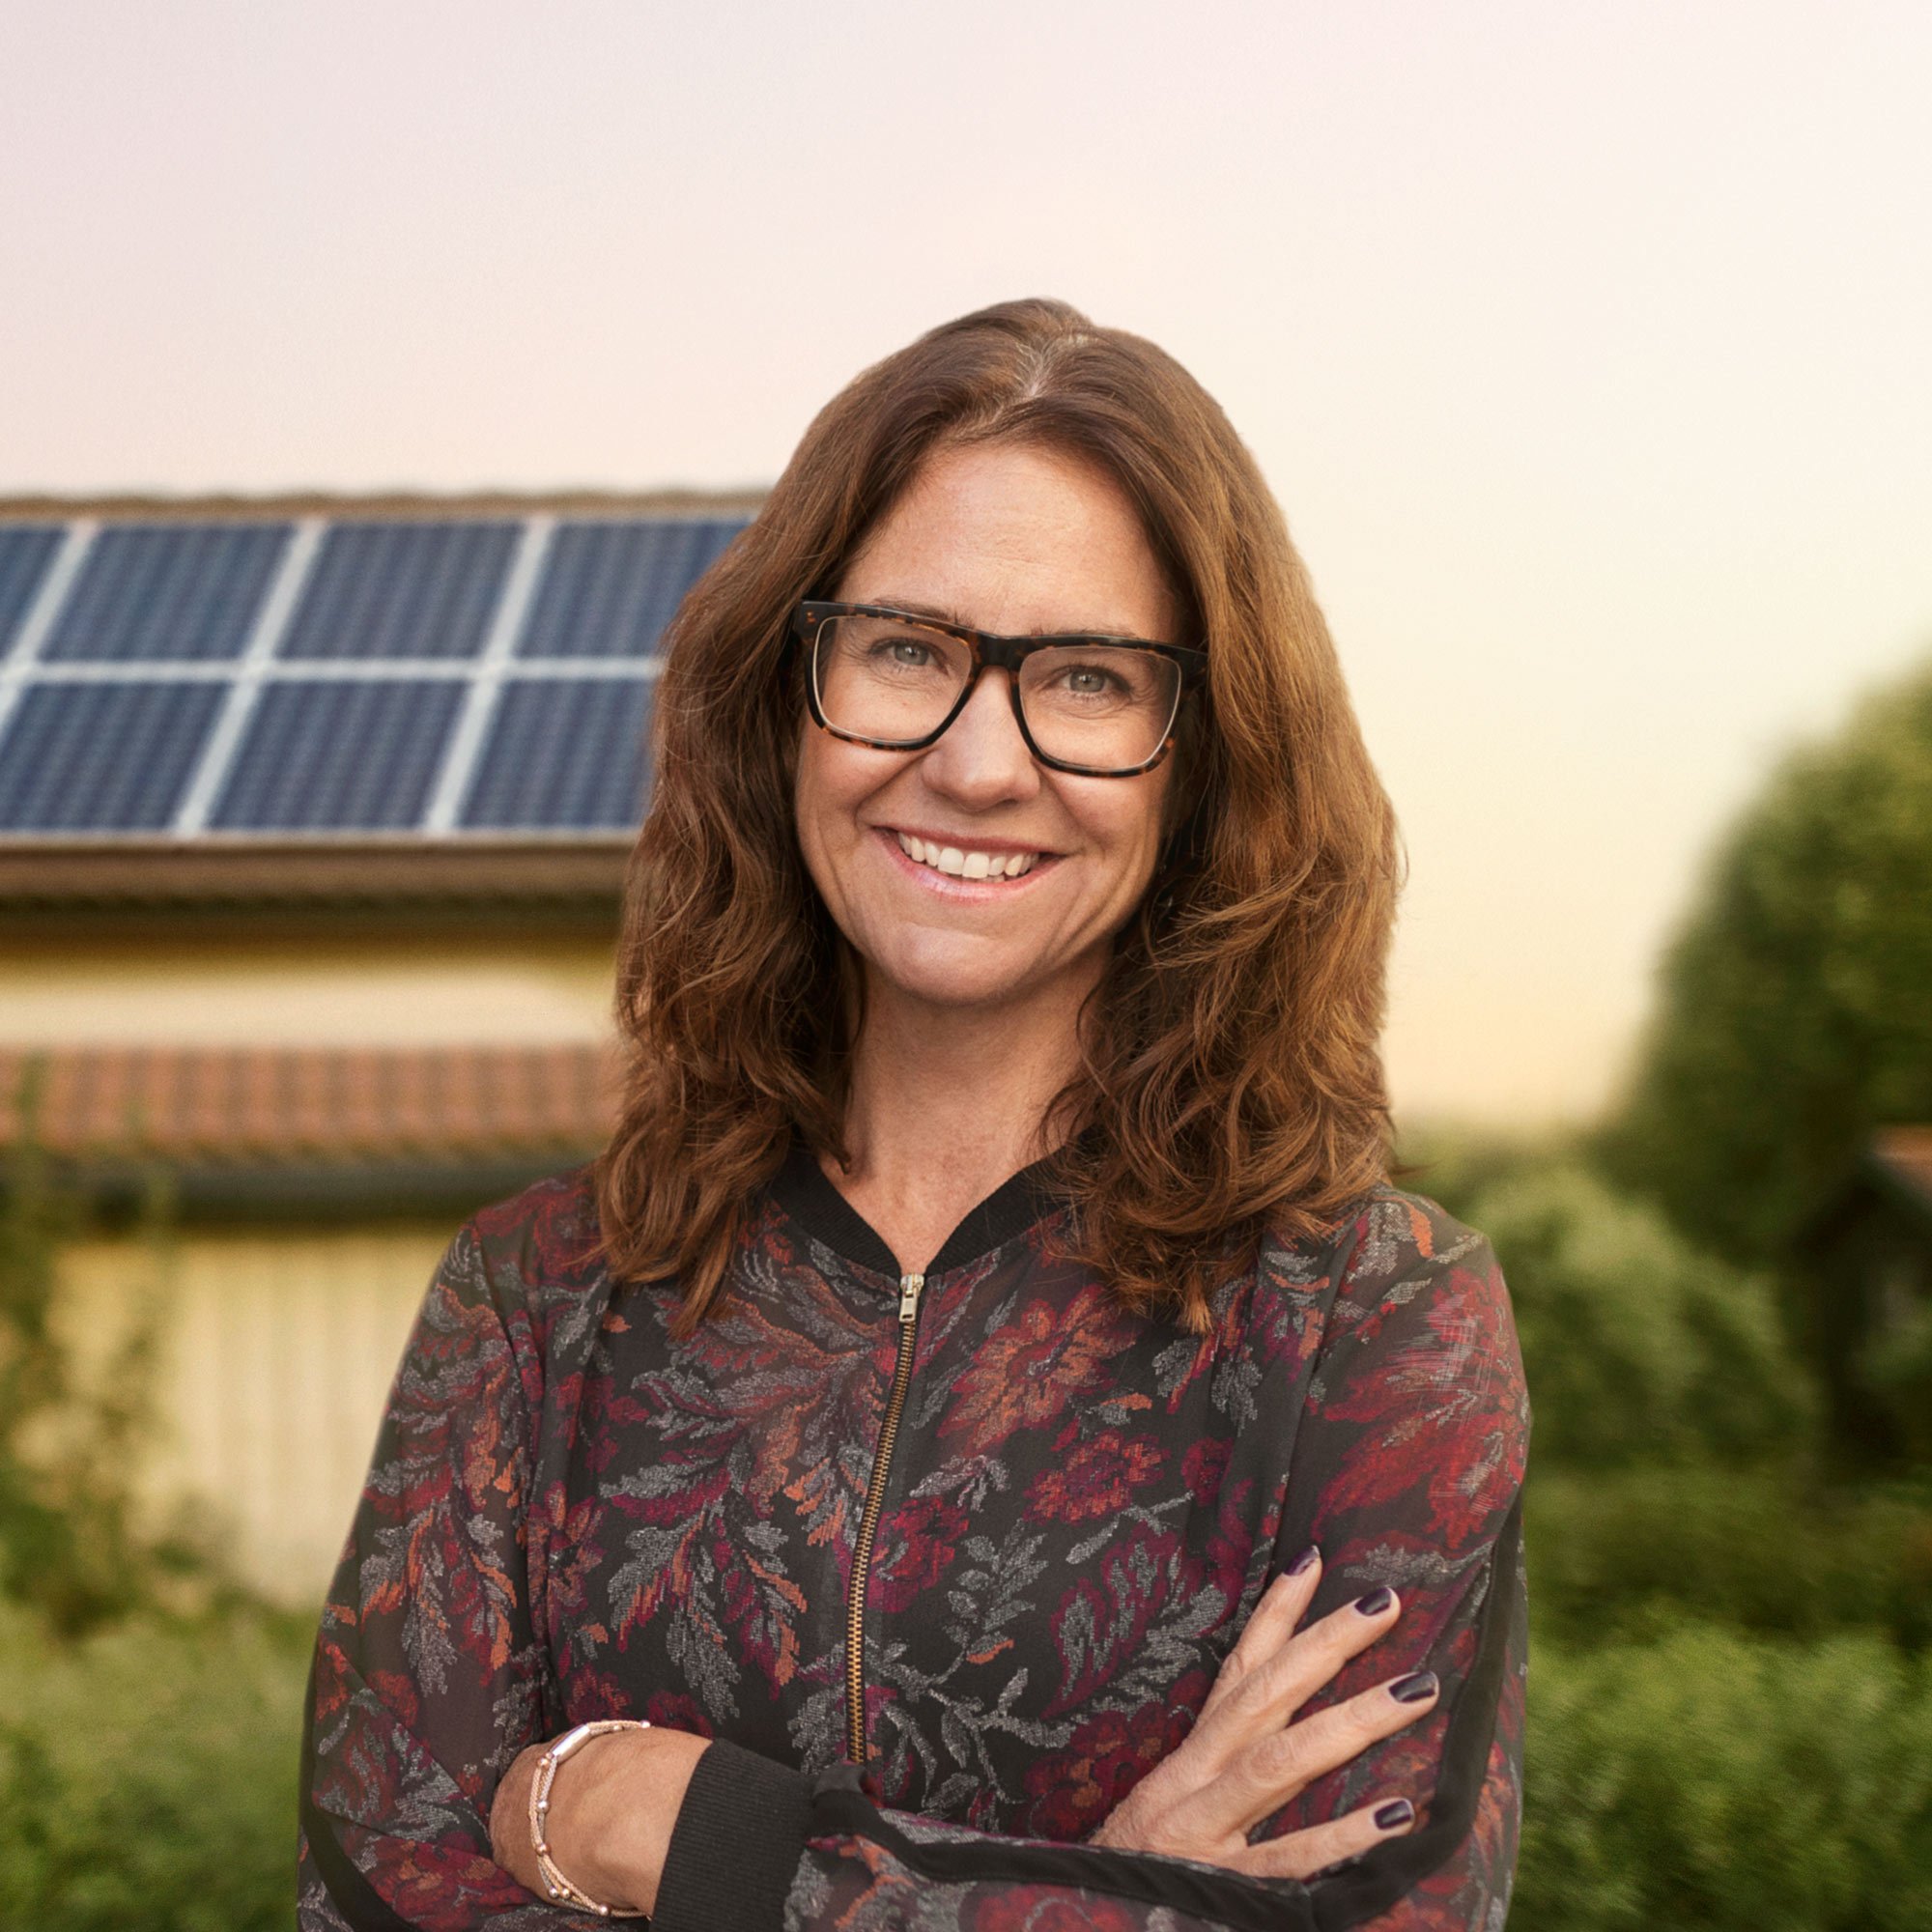 Kvinna står framför hus med solpaneler